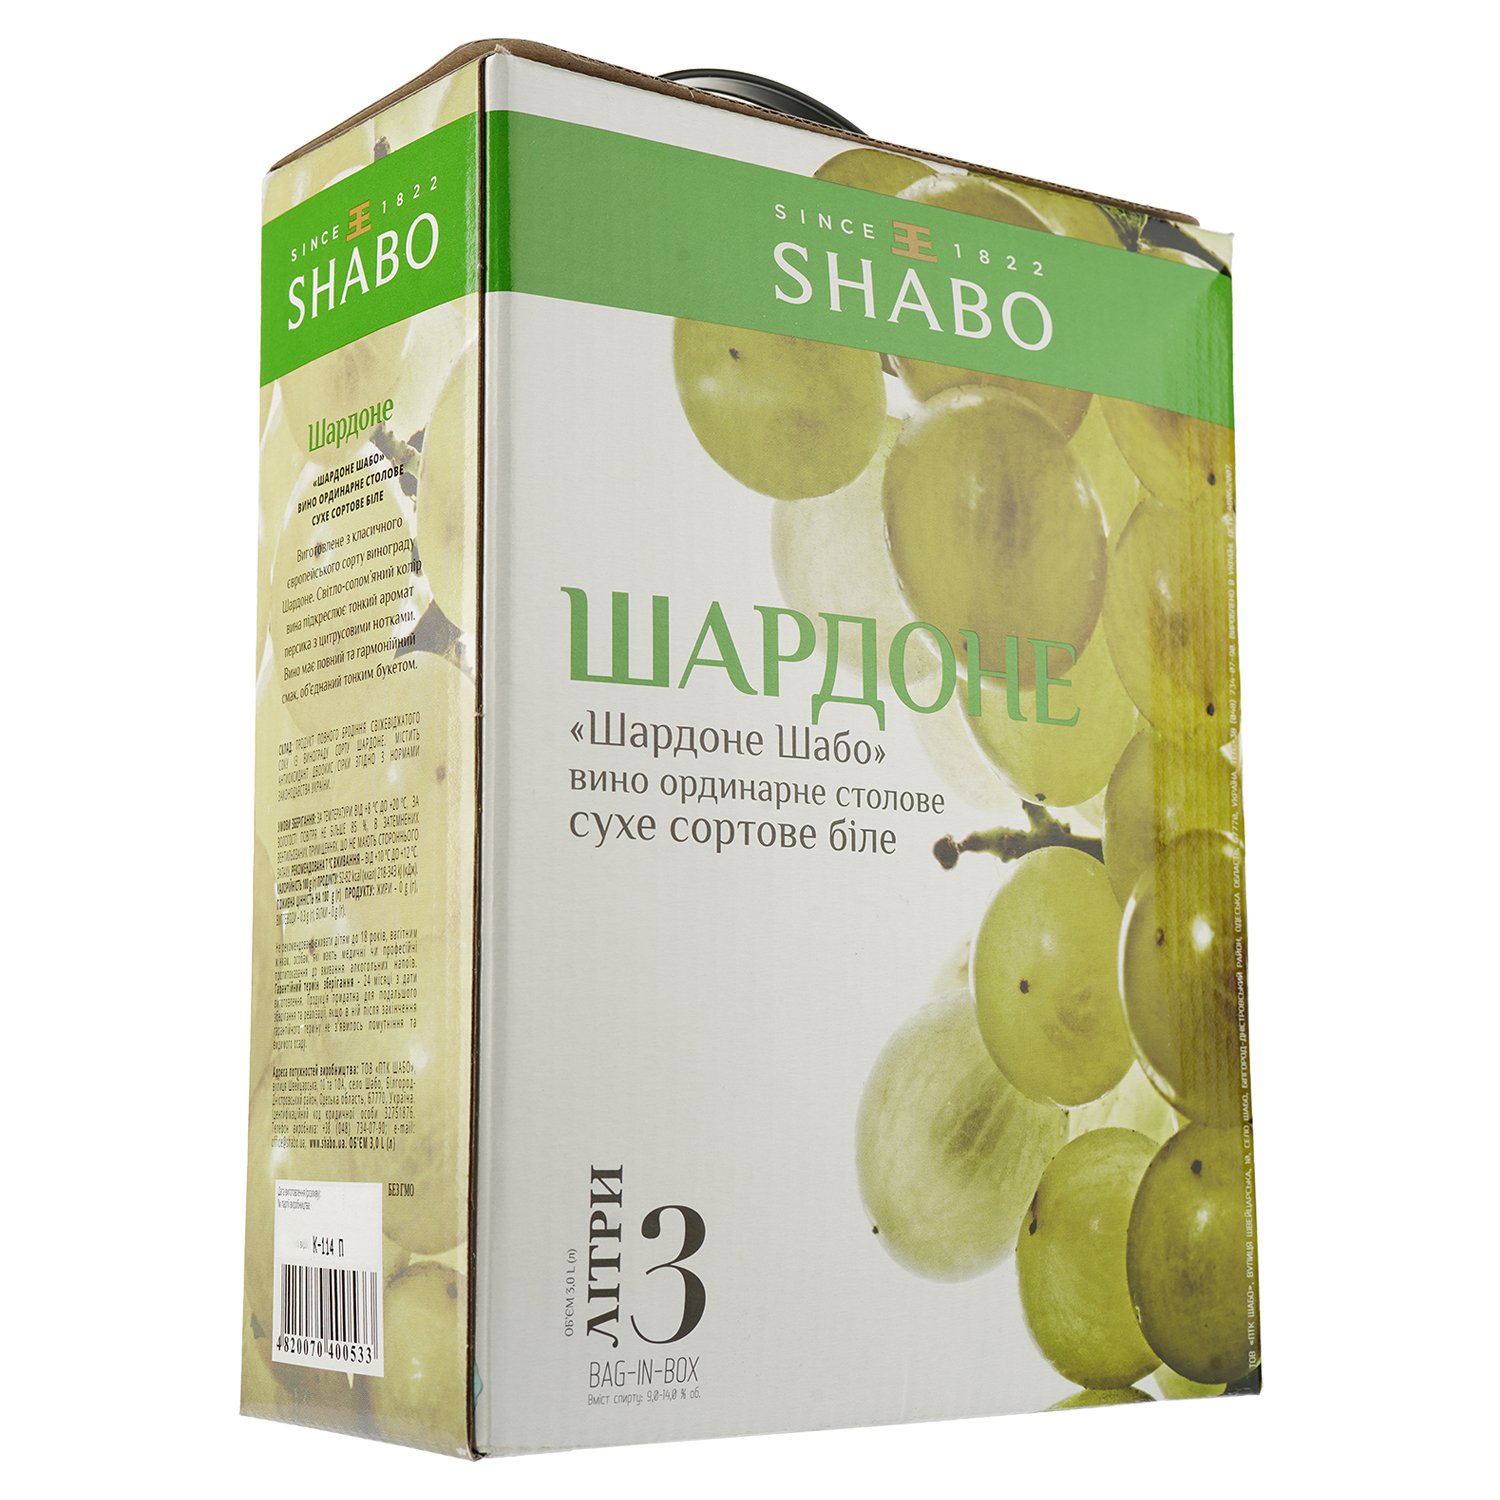 Вино Shabo Шардоне, біле, сухе, Bag-in-Box, 9,5-14%, 3 л - фото 1